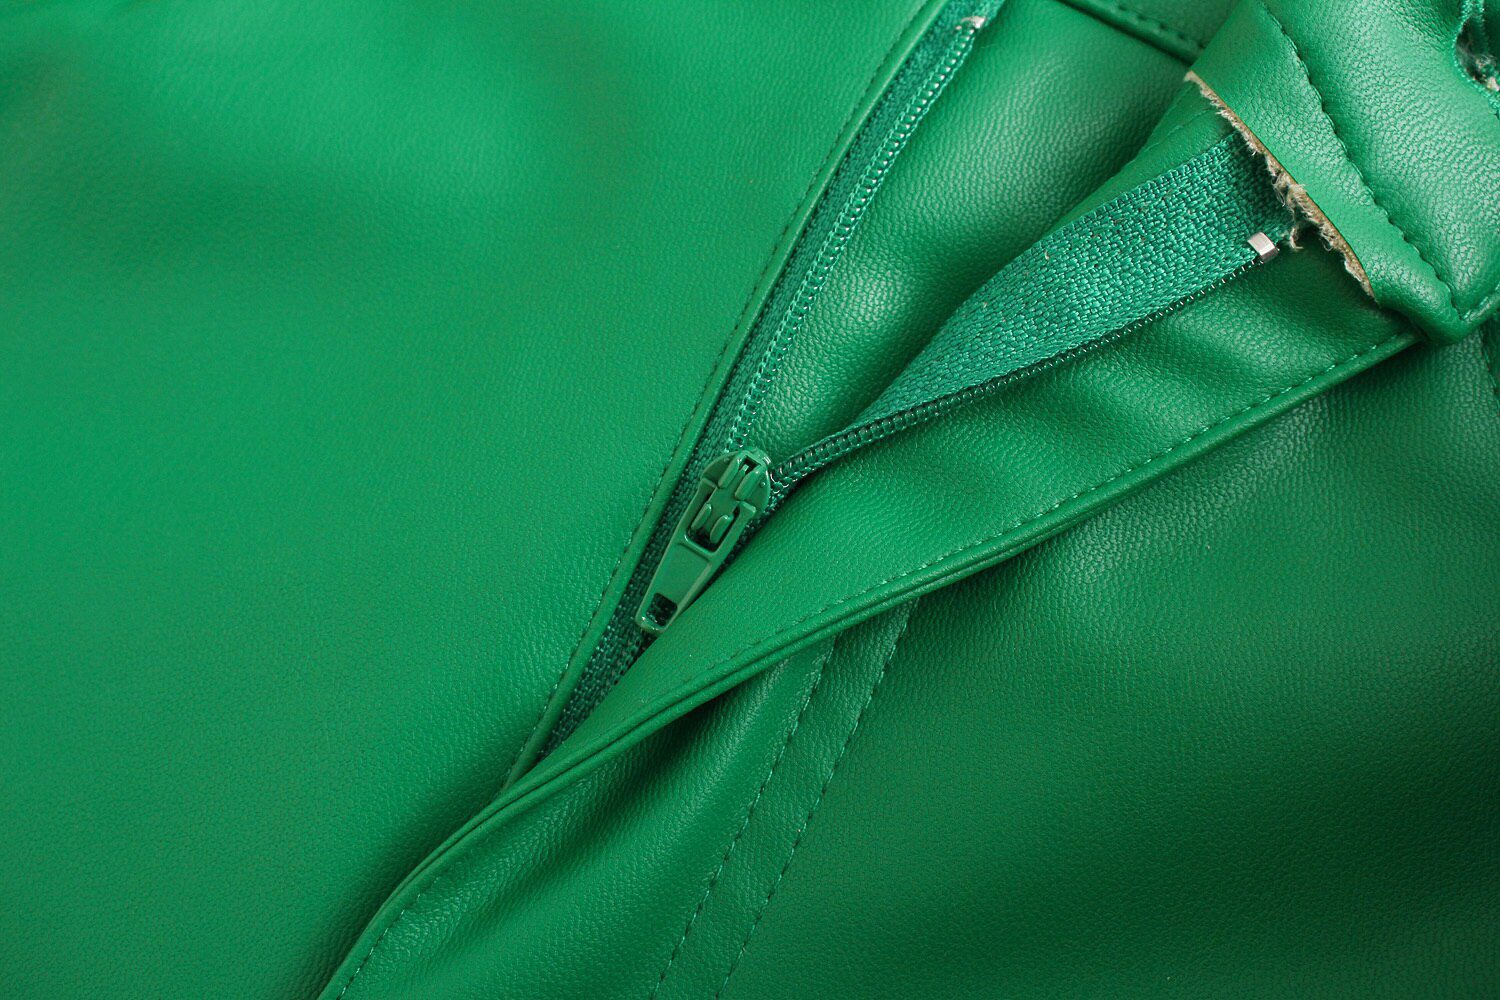 Green PU Leather Zipper Pants - Pants - Uniqistic.com